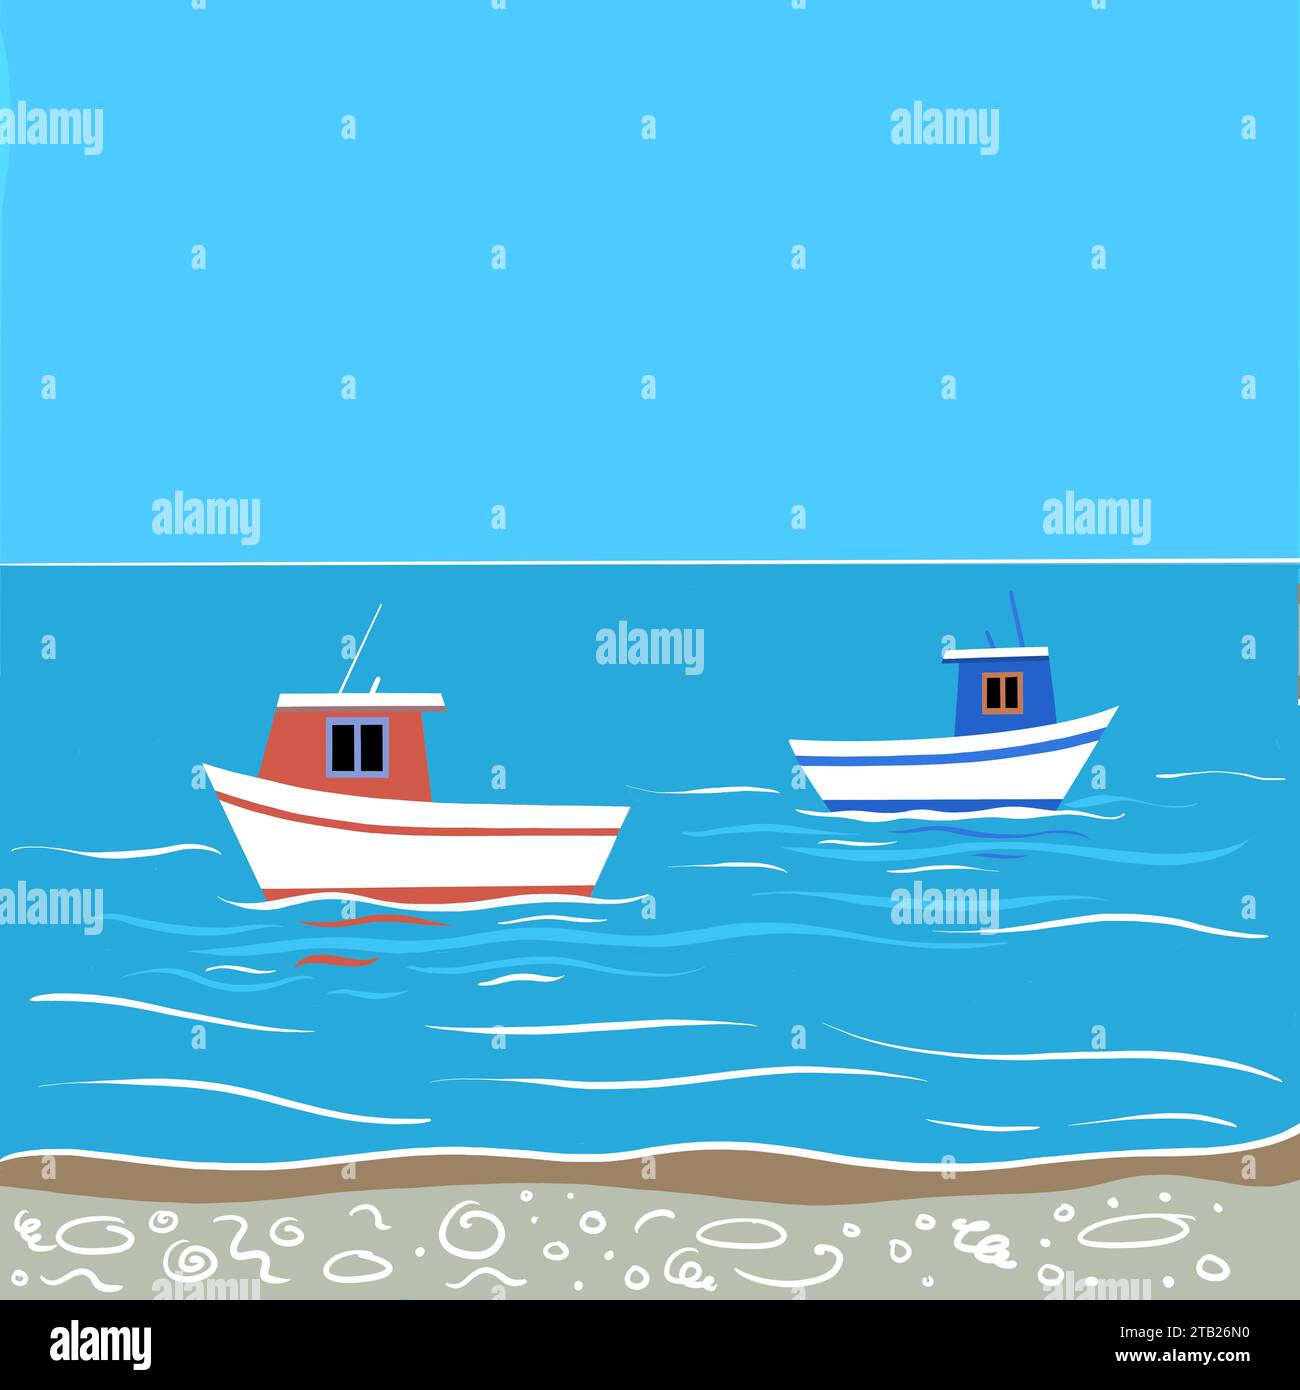 Illustration de bateaux de pêche au bord de la mer. Les bateaux sont de couleur vive. Les bateaux de pêche sont sur une mer calme avec de douces ondulations et vagues. Banque D'Images